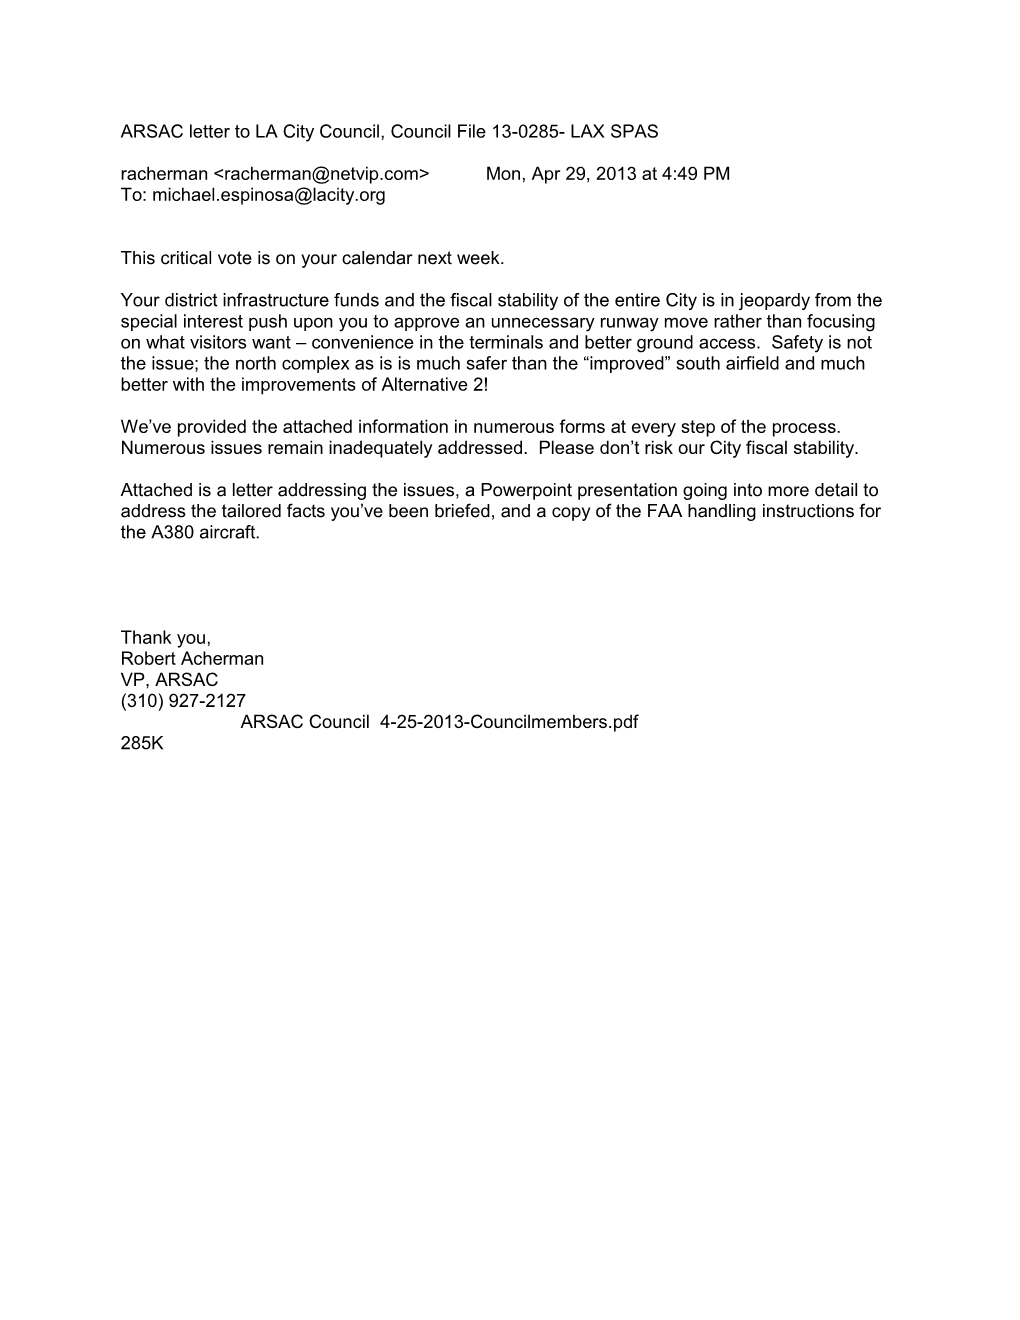 ARSAC Letter to LA City Council, Council File 13-0285